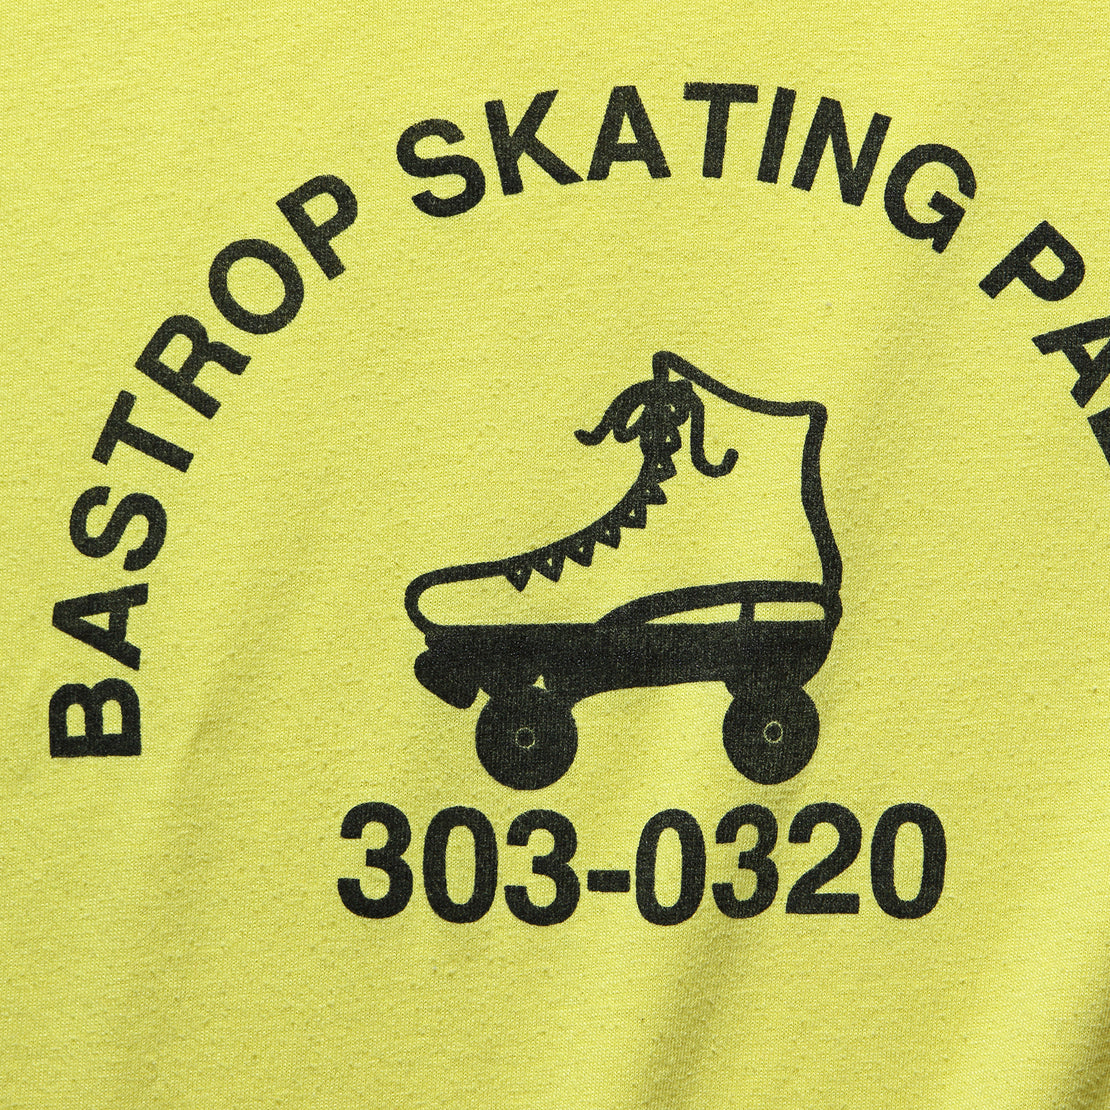 Bastrop Skating Palace T-Shirt - Yellow